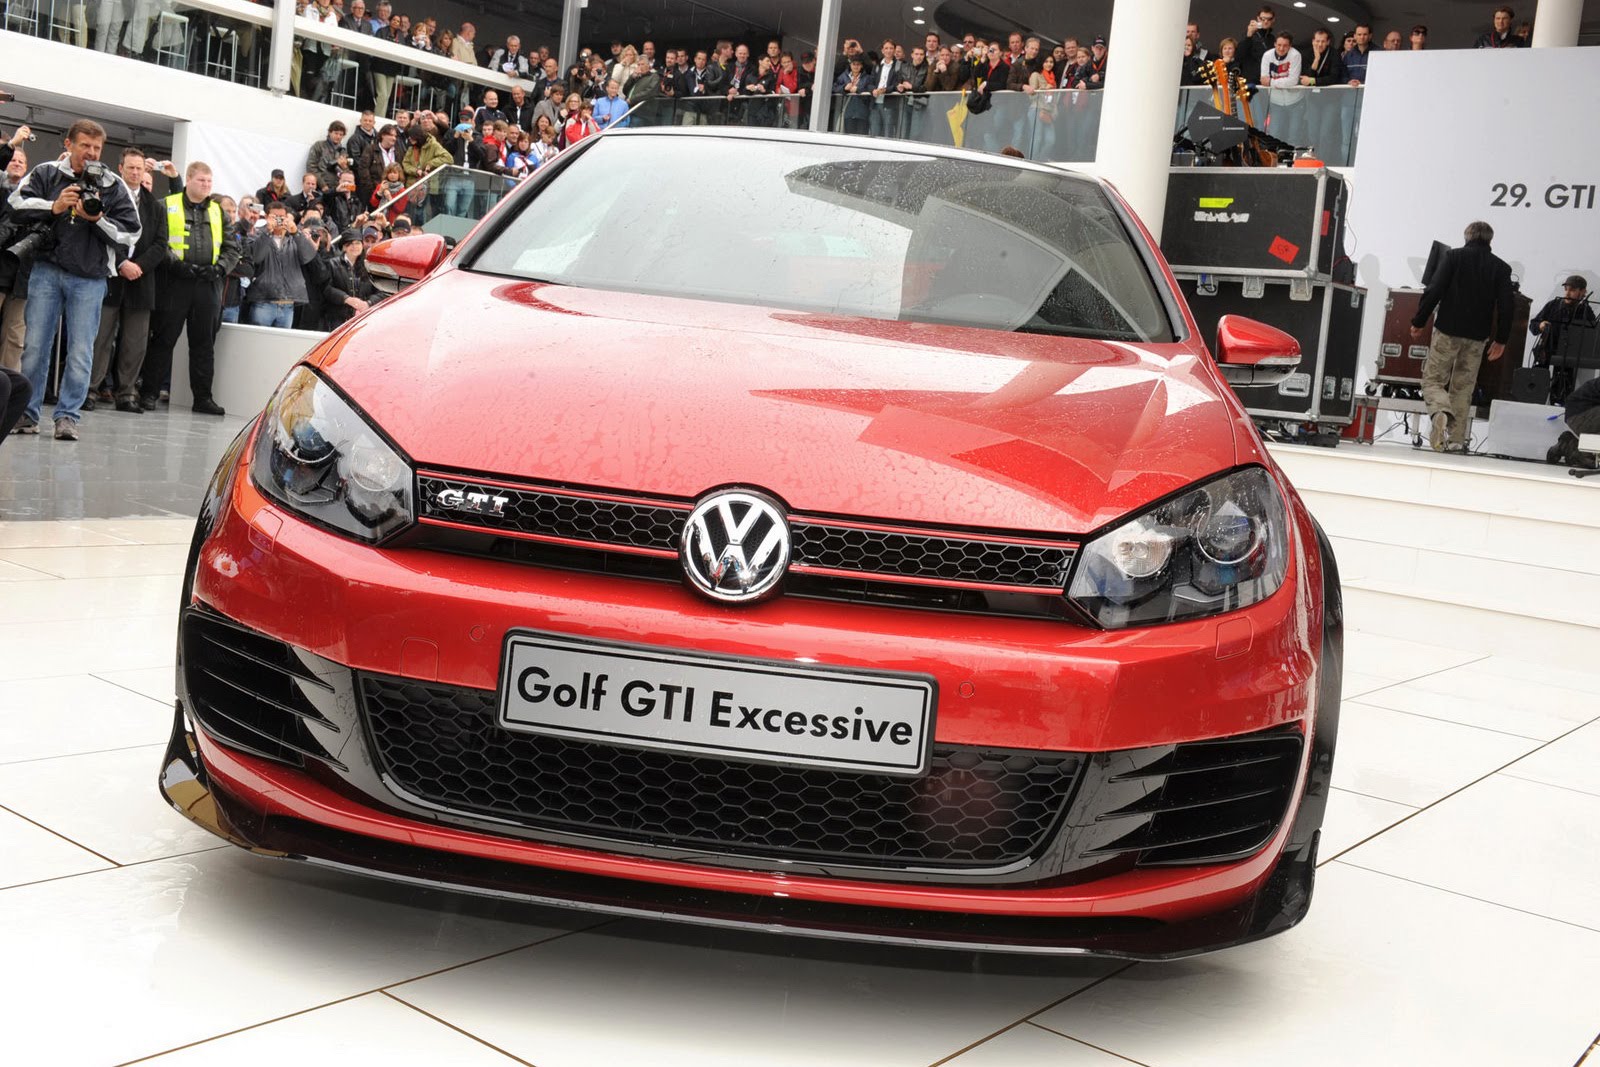 VW-Golf-GTI-Excessive-35.jpg